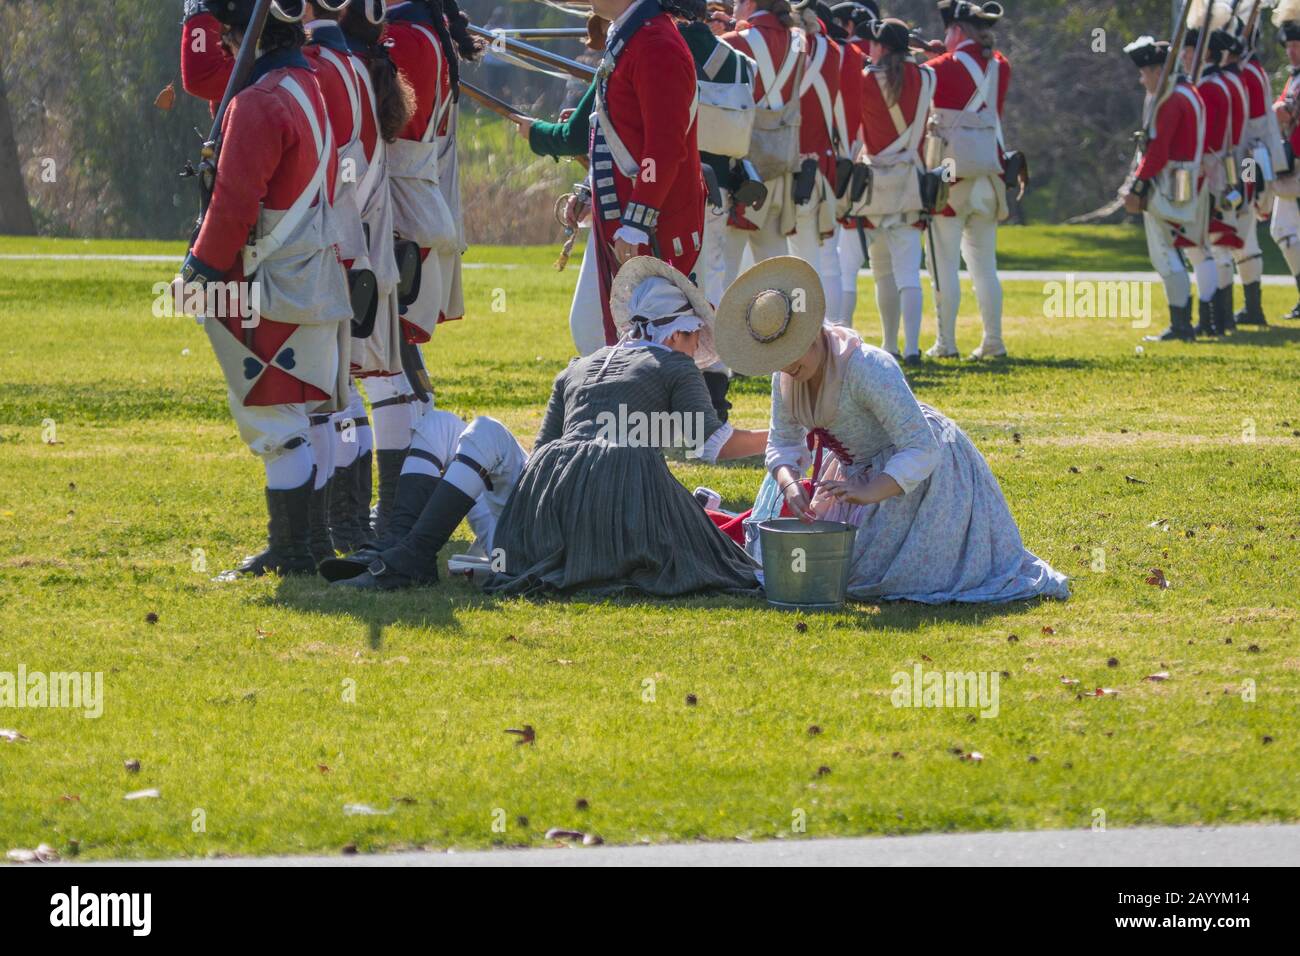 Le donne britanniche curano i soldati feriti del rivestimento rosso durante una rievocazione della rivoluzione americana in un parco Huntington Beach, California, Stati Uniti Foto Stock